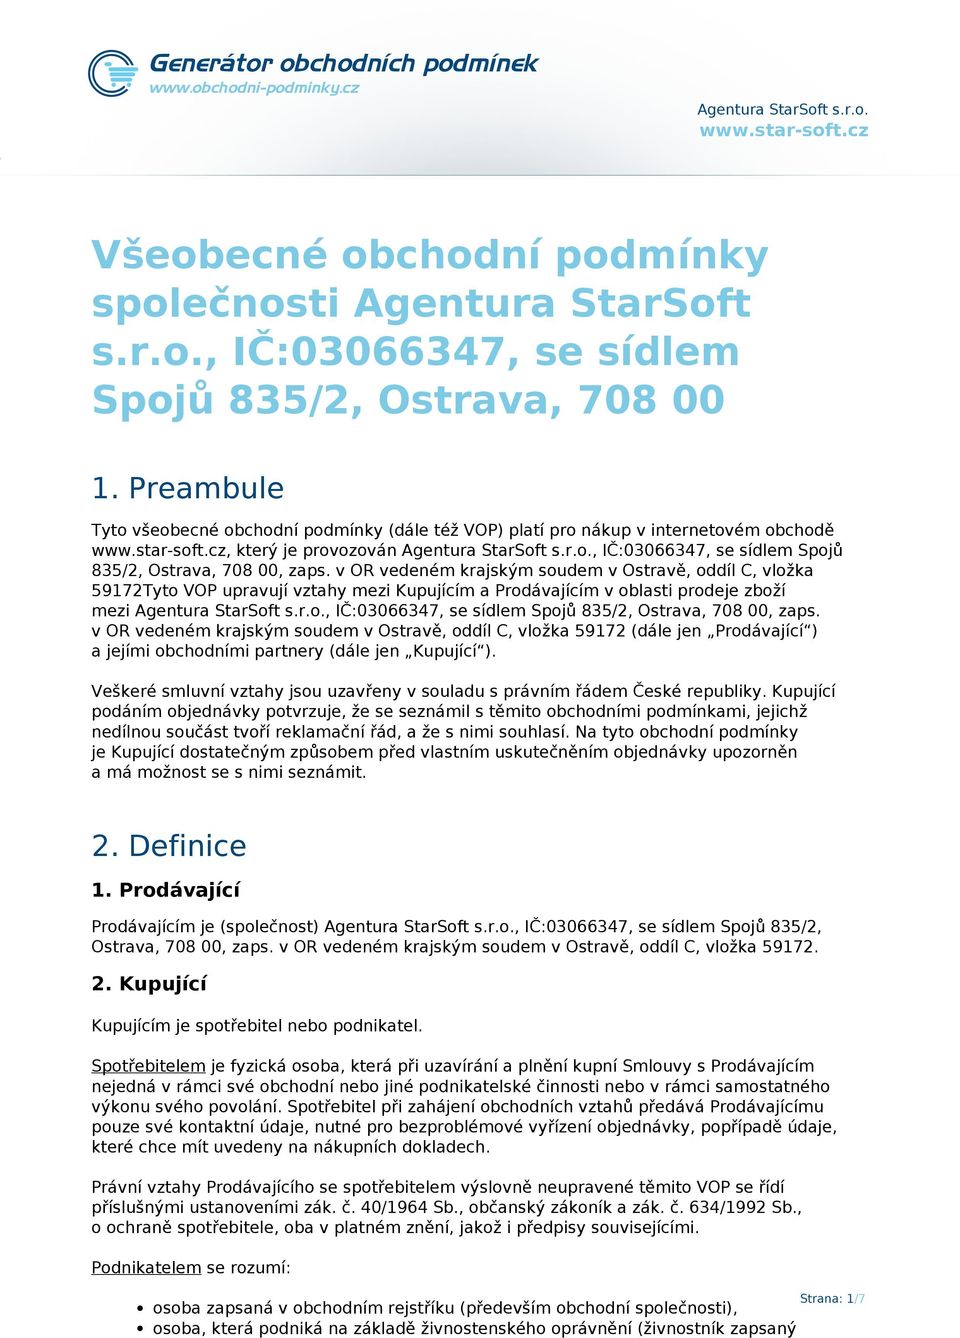 v OR vedeném krajským soudem v Ostravě, oddíl C, vložka 59172Tyto VOP upravují vztahy mezi Kupujícím a Prodávajícím v oblasti prodeje zboží mezi Agentura StarSoft s.r.o., IČ:03066347, se sídlem Spojů 835/2, Ostrava, 708 00, zaps.